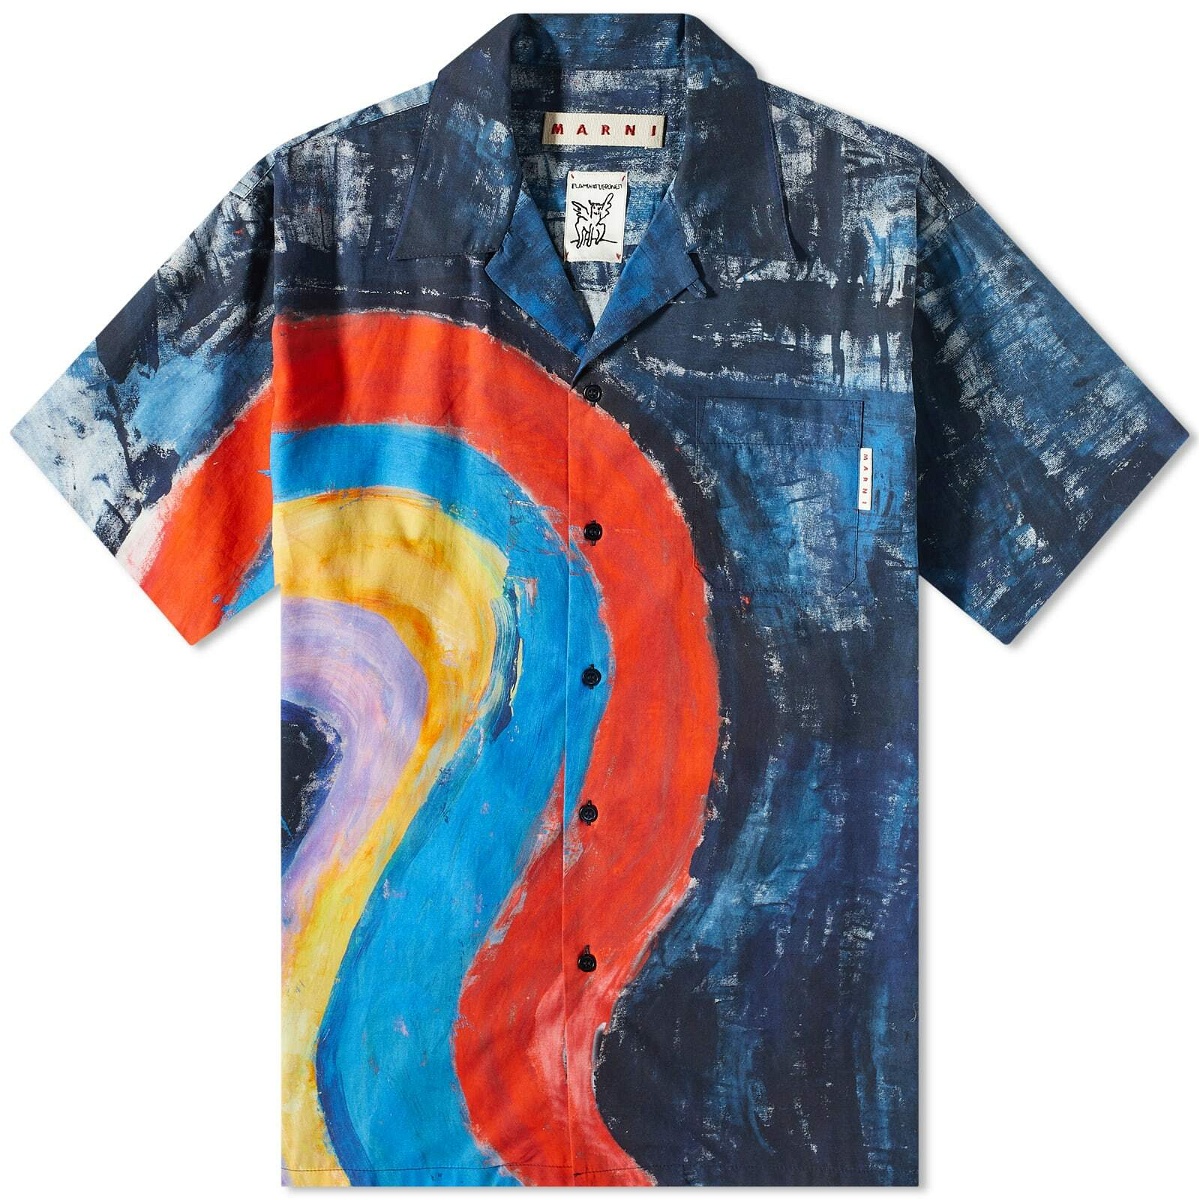 Marni Men's Rainbow Vacation Shirt in Royal Marni